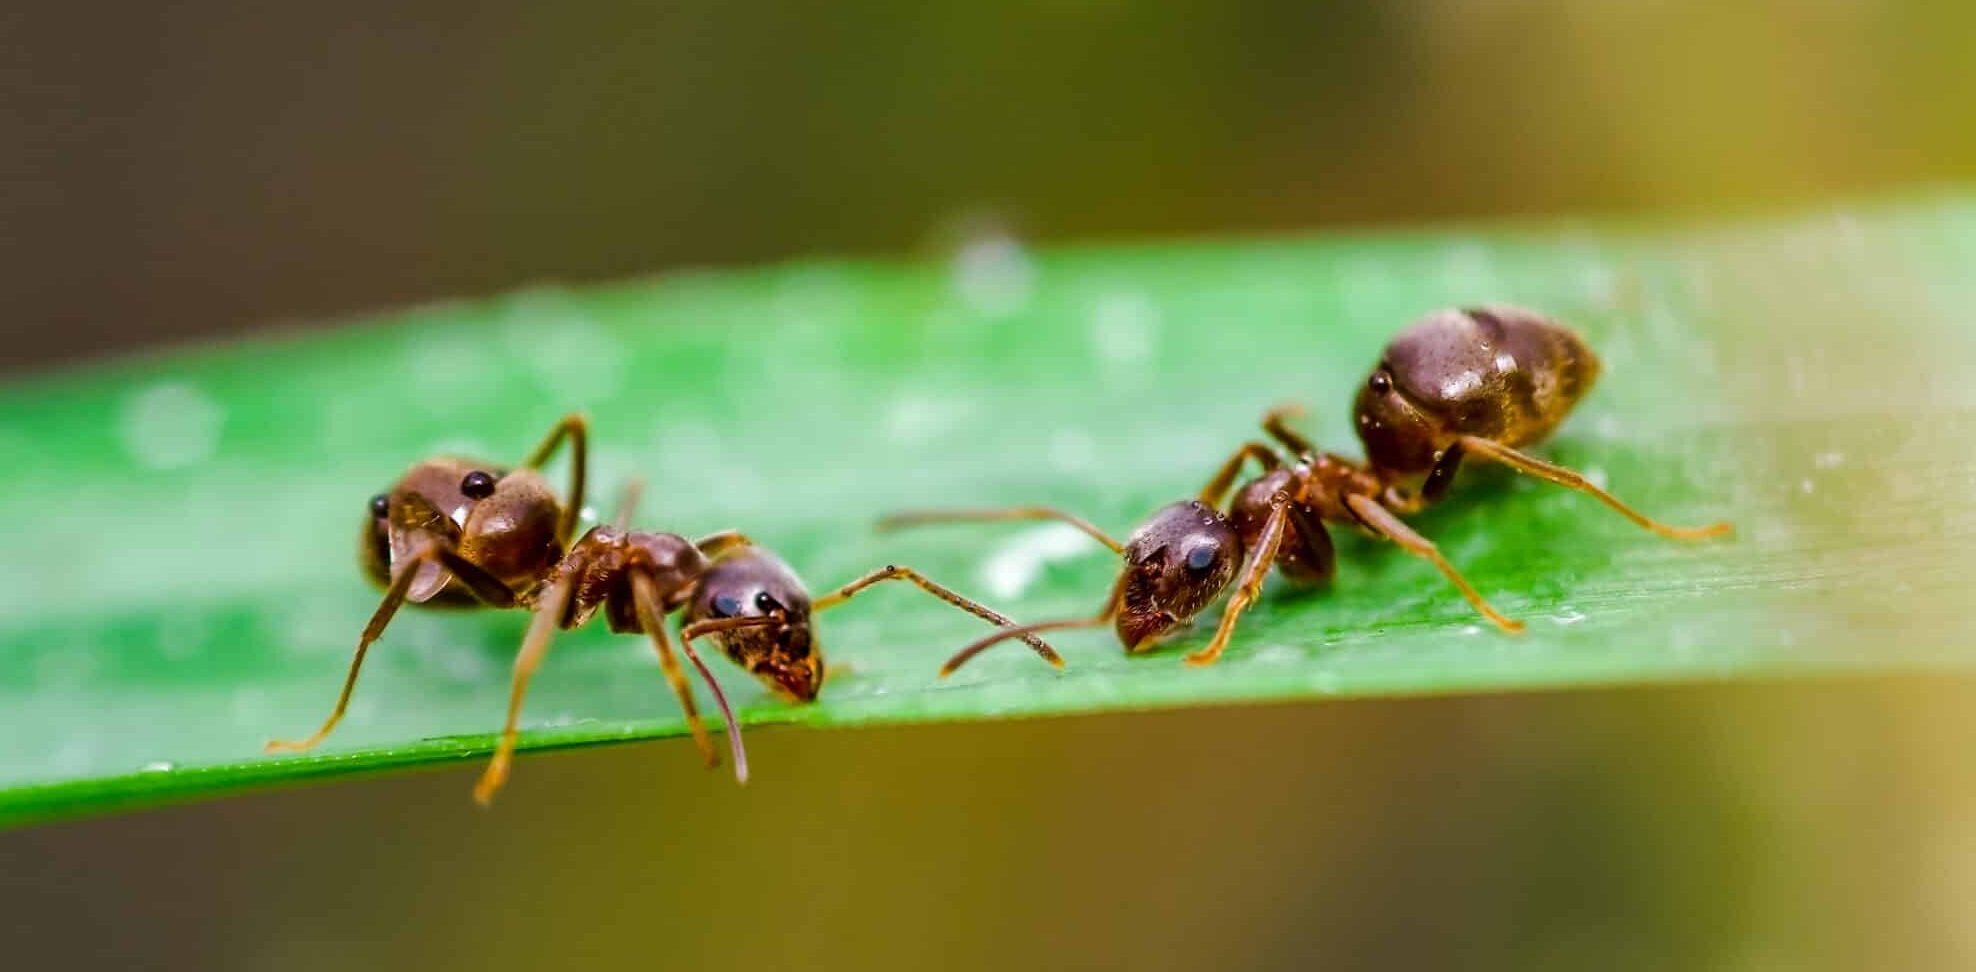 Пестициды предложили заменить муравьями